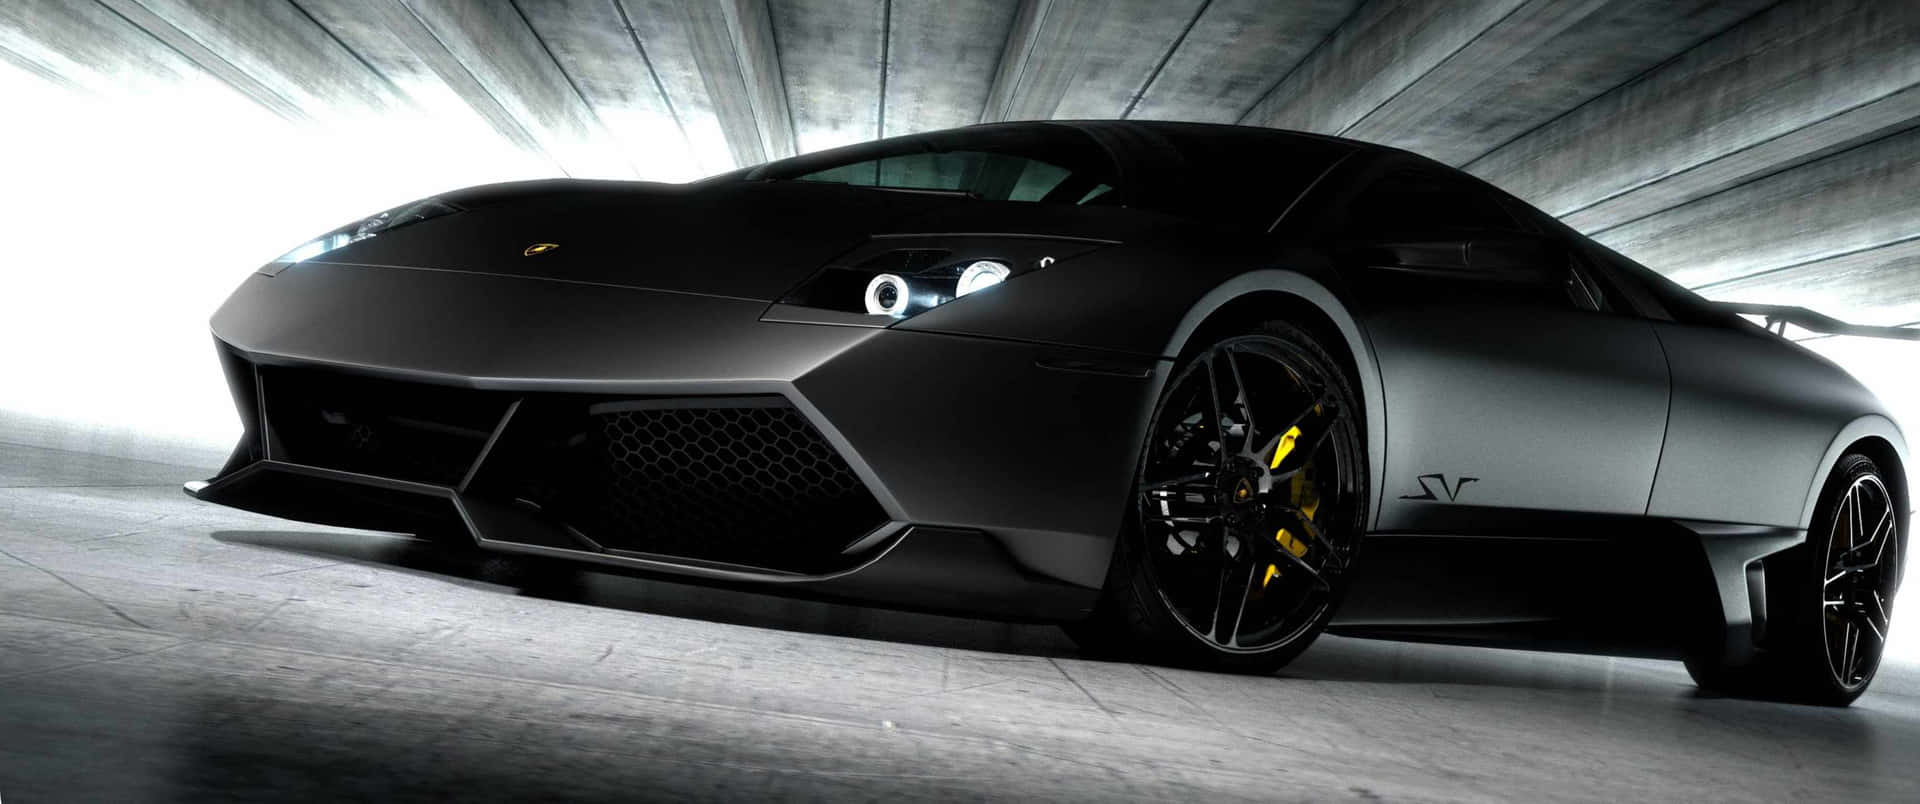 Spectacular 3440x1440p Lamborghini